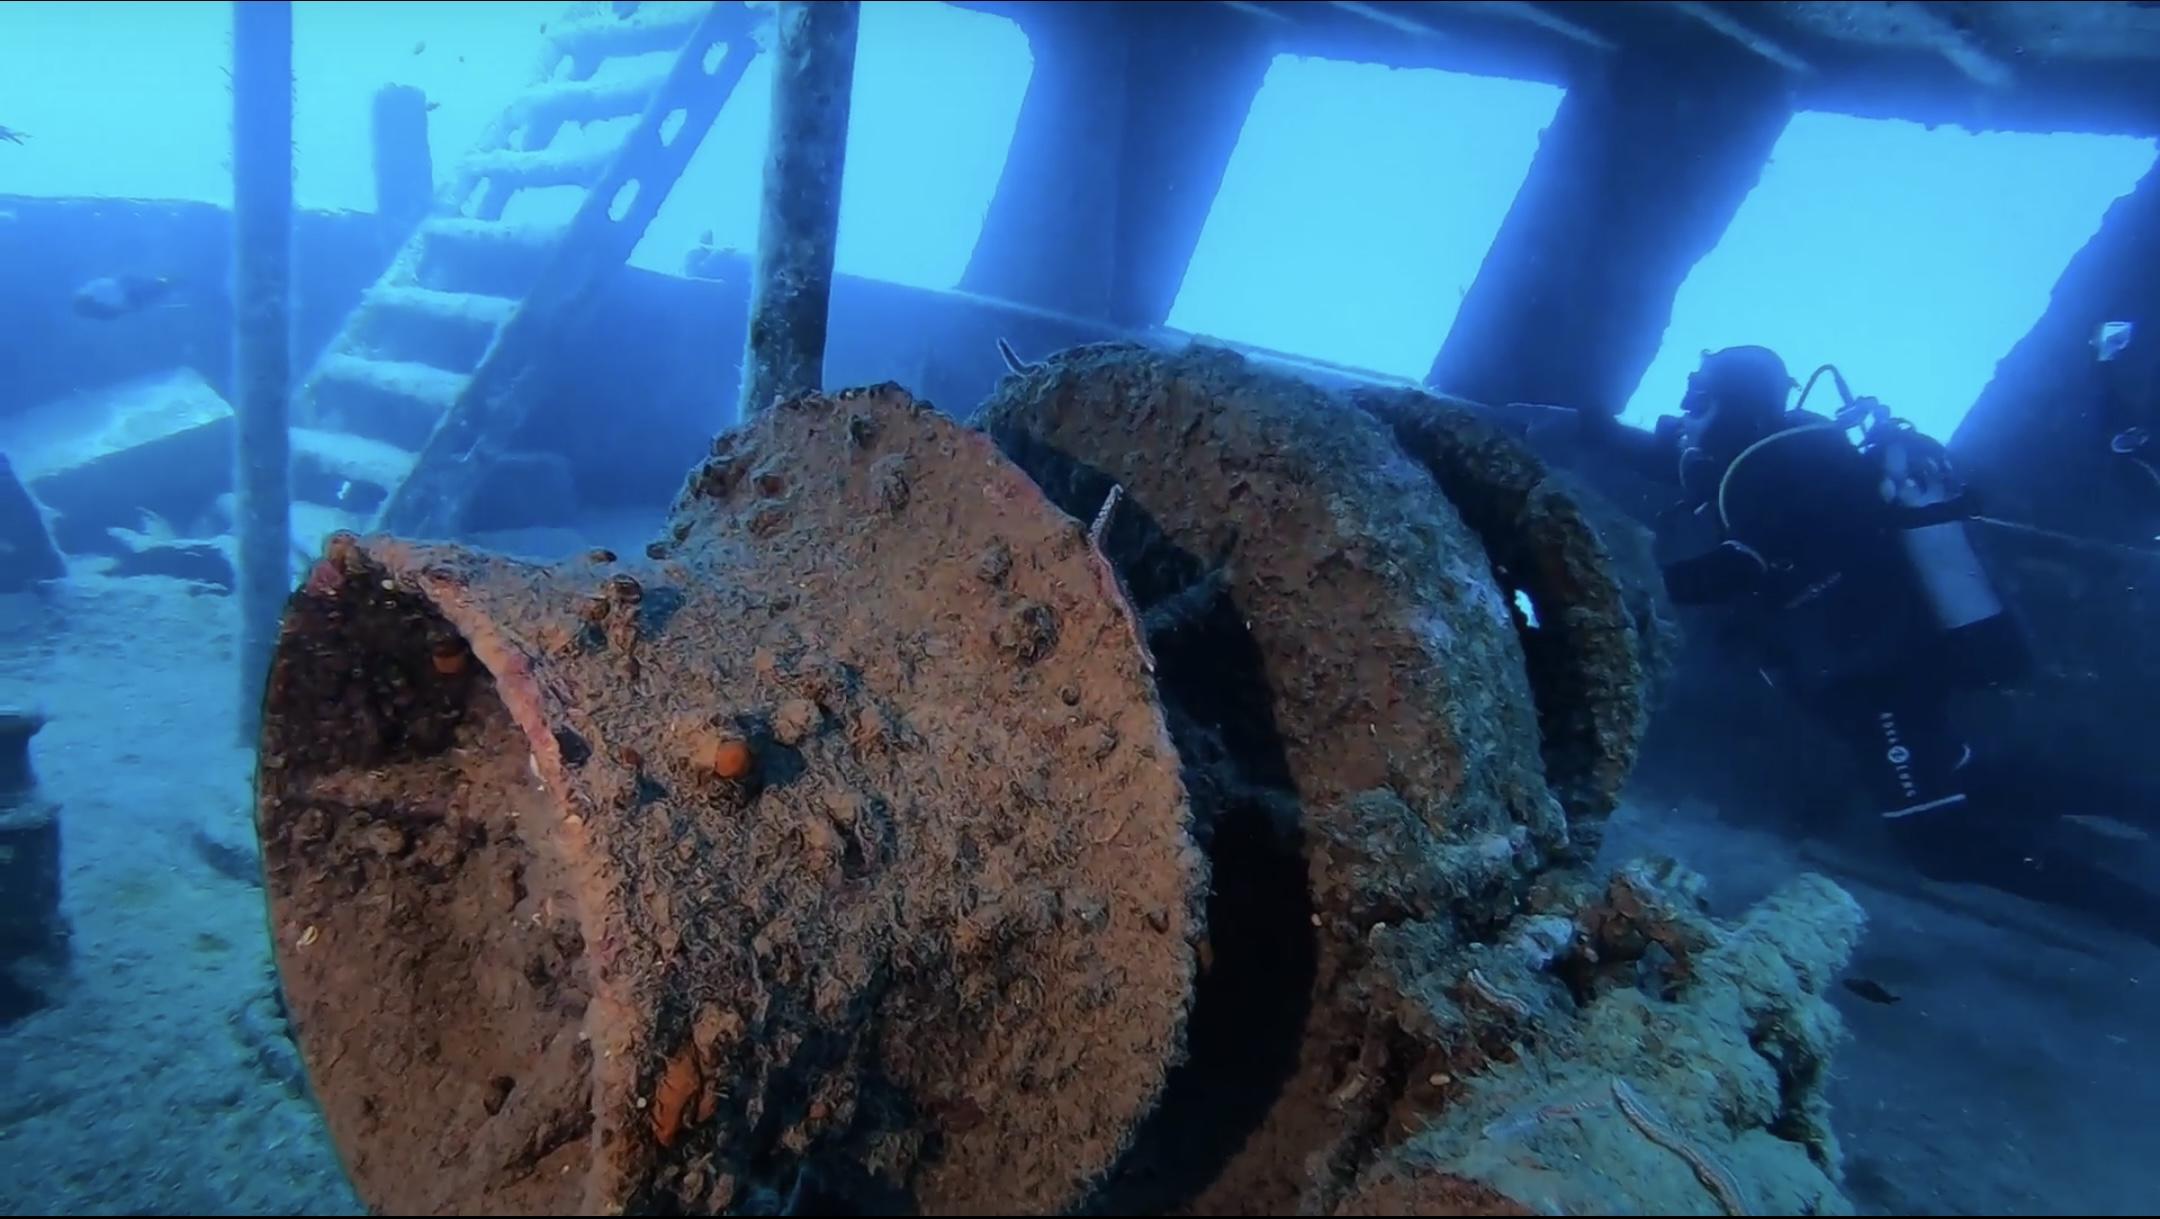 Inside the wreck [Pascal Pardoux]